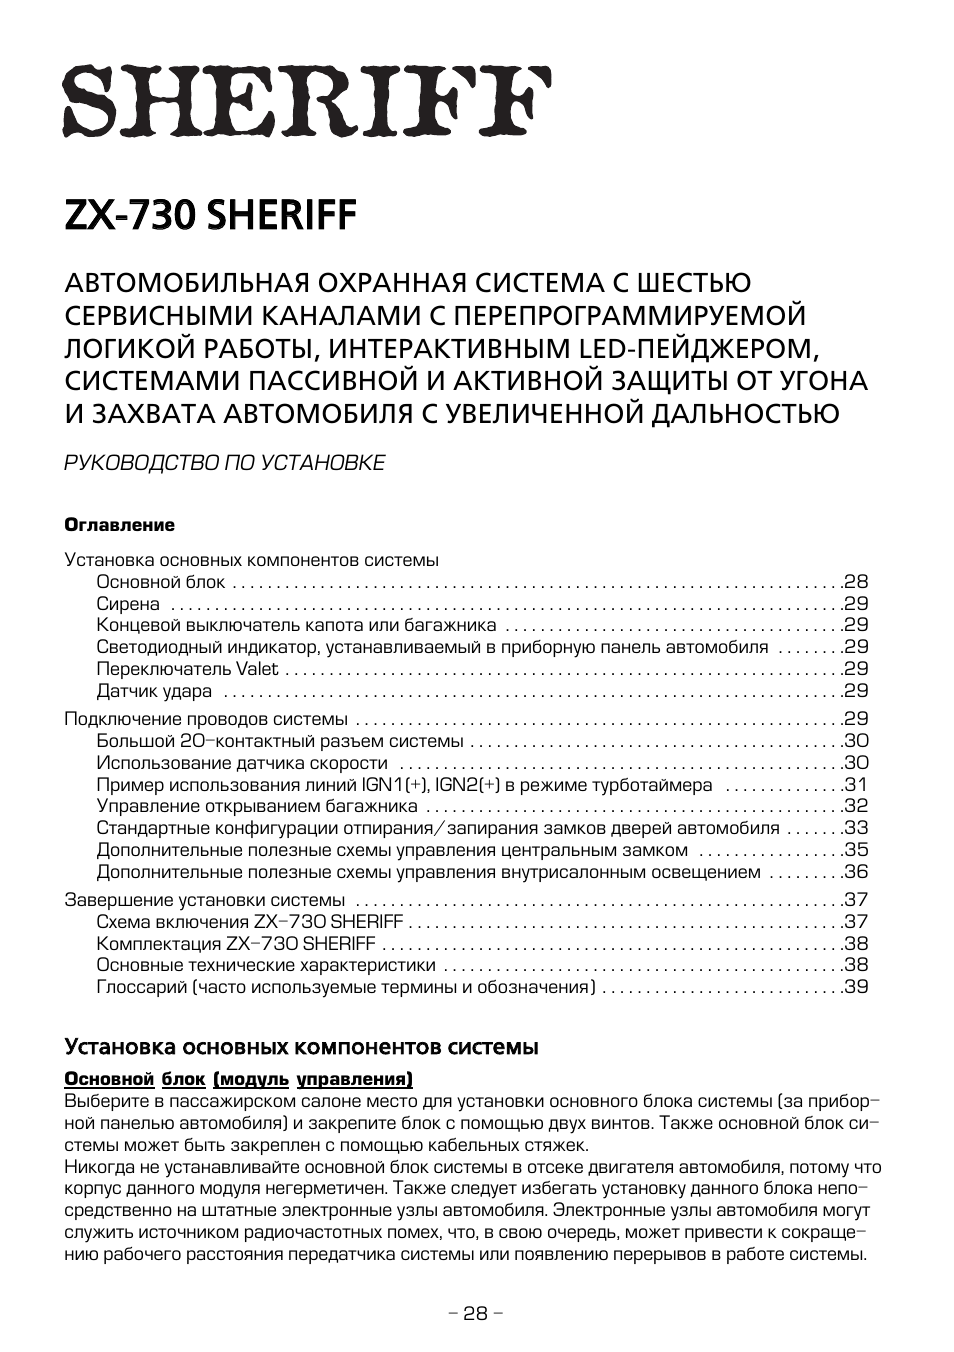 Шериф zx 730 инструкция